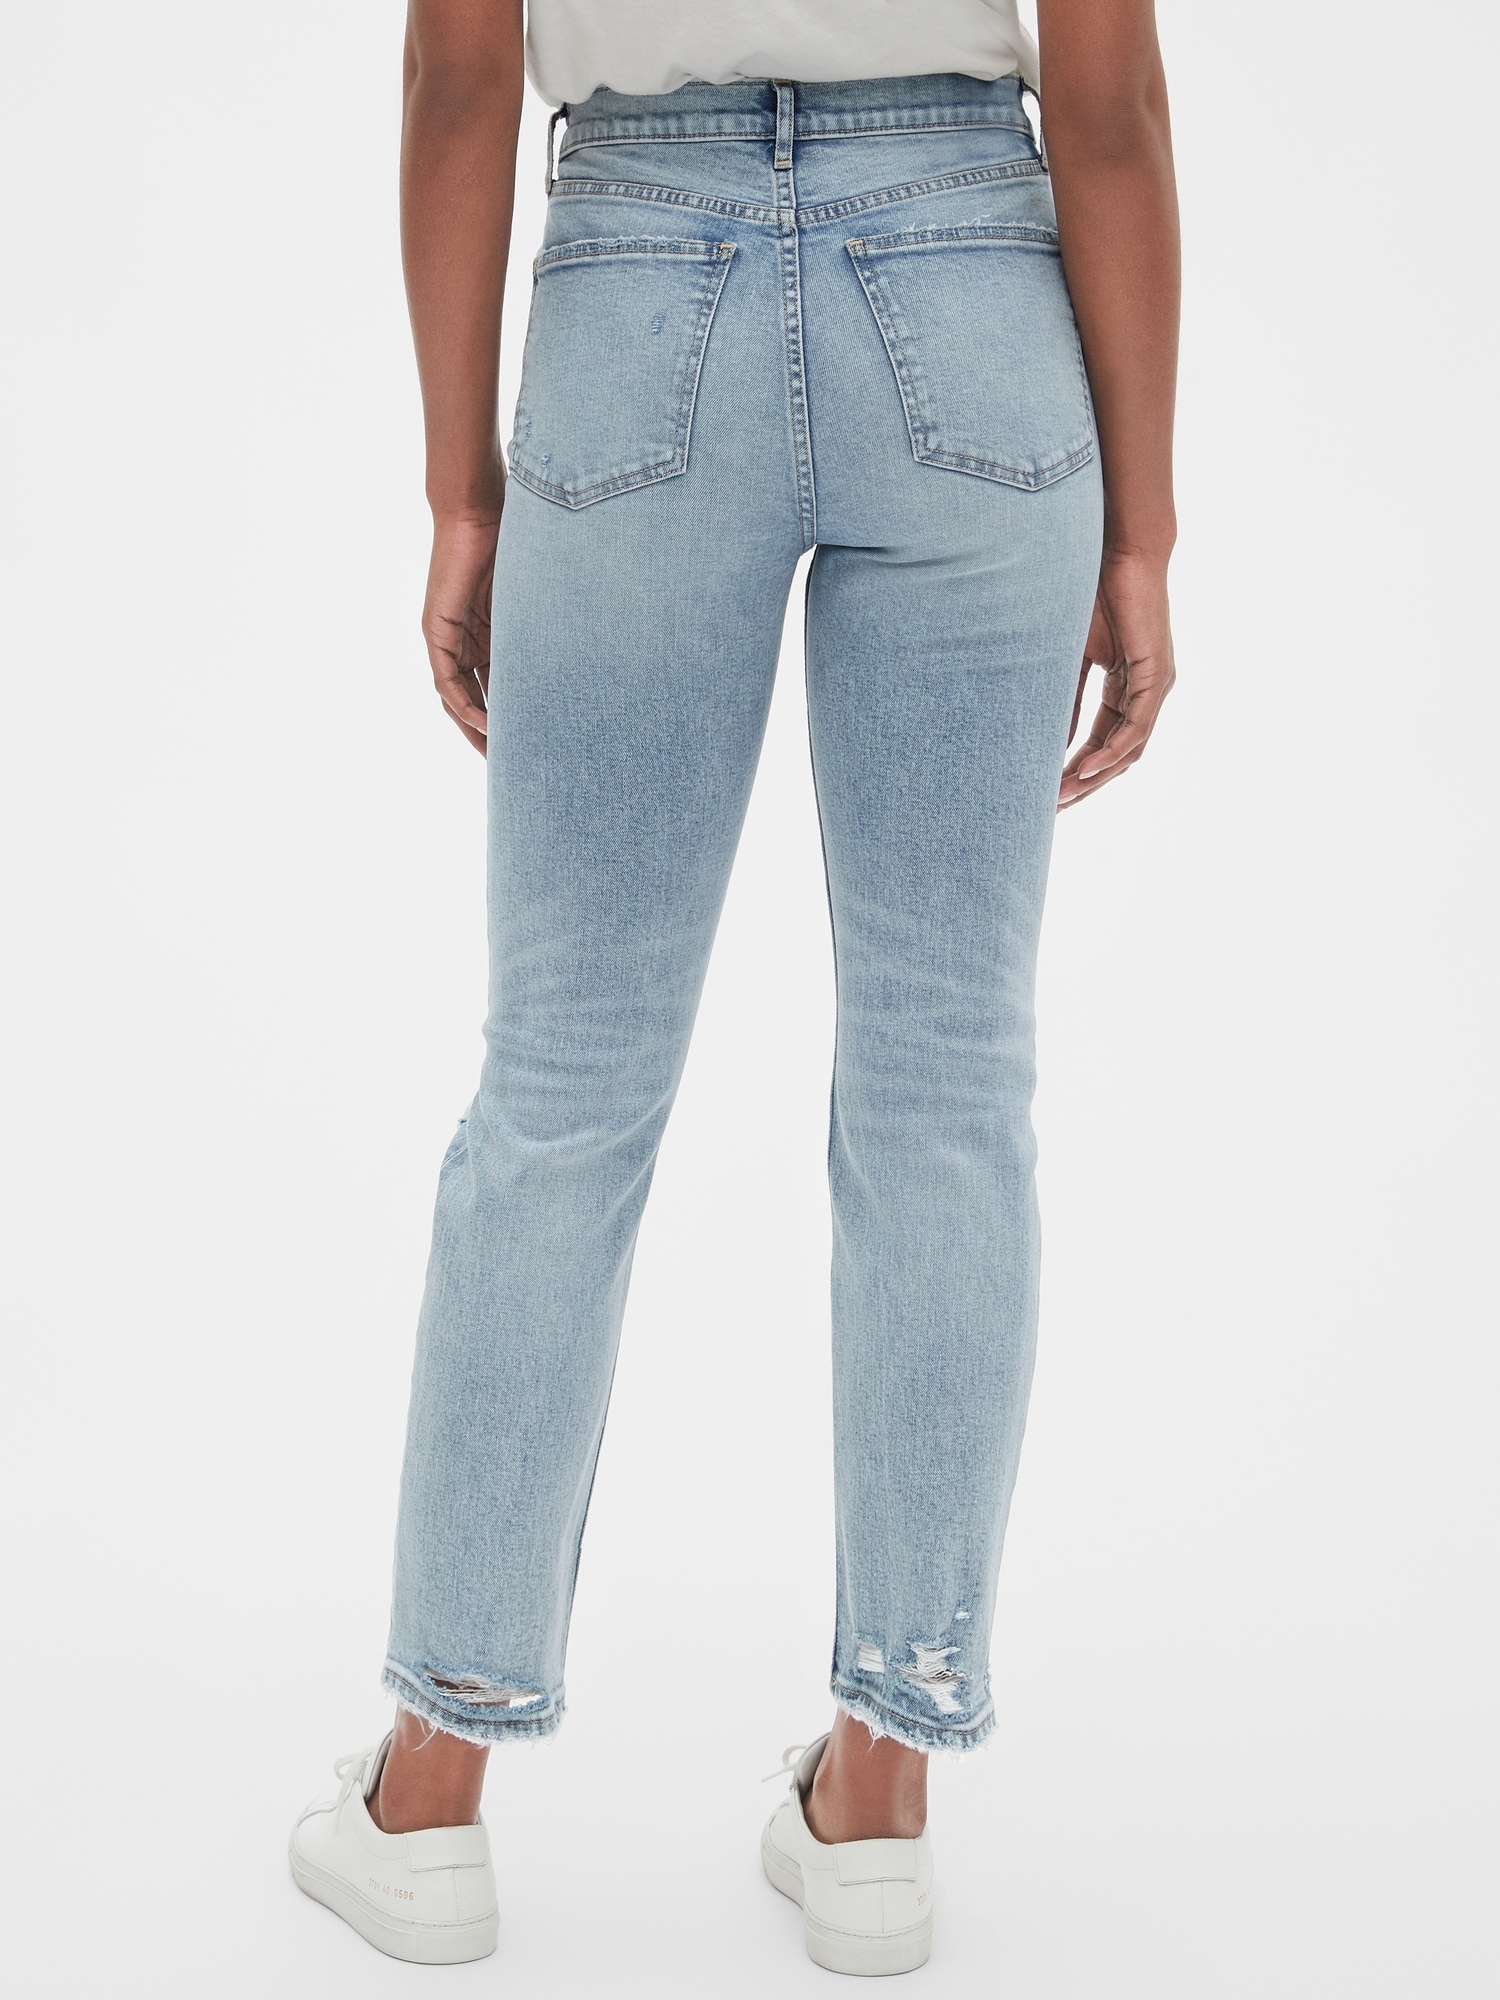 gap tall jeans